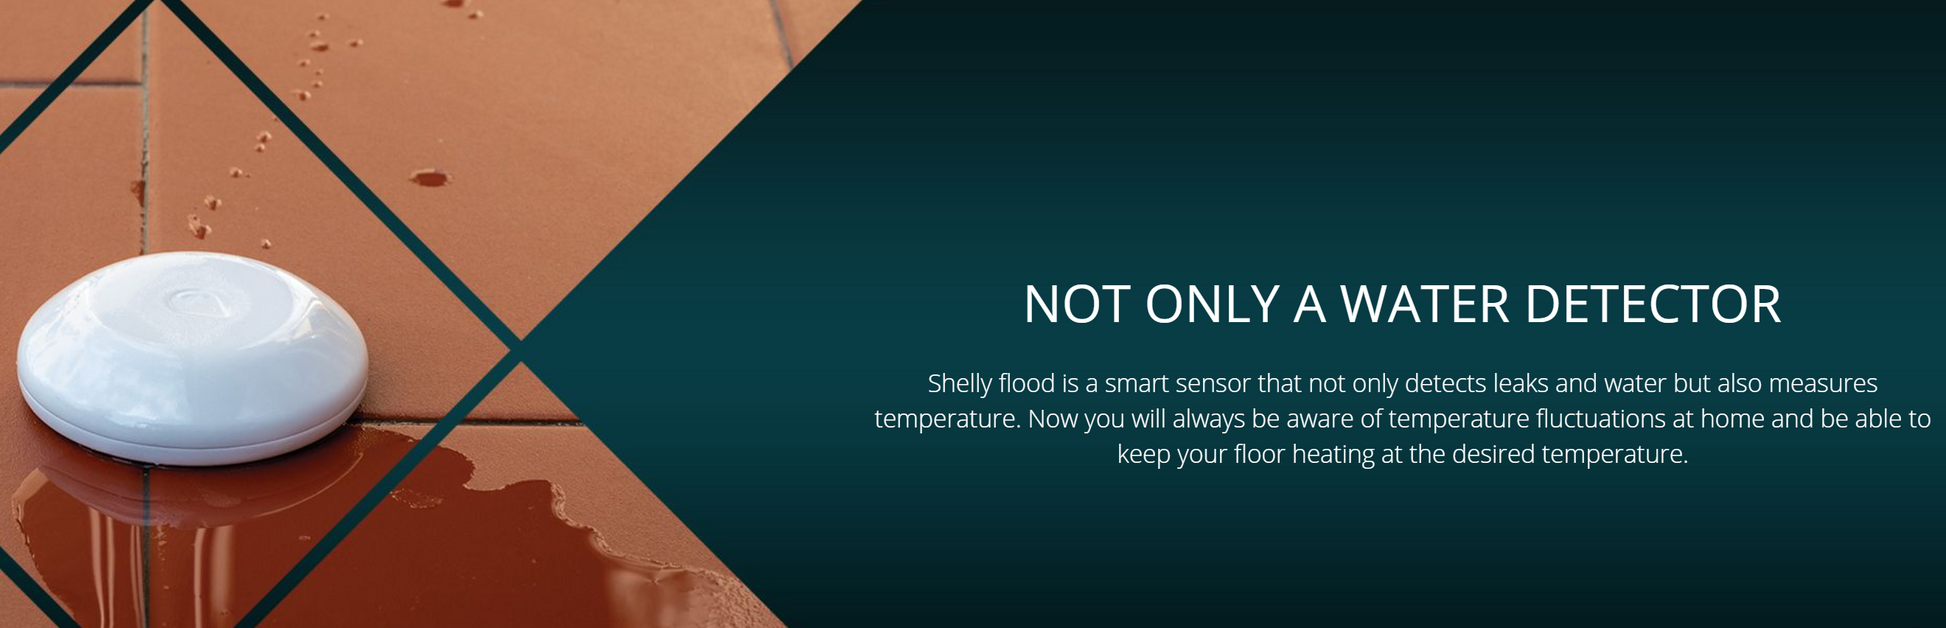 Shelly WiFi-operated Flood Sensor Smart Home Automation Google Home